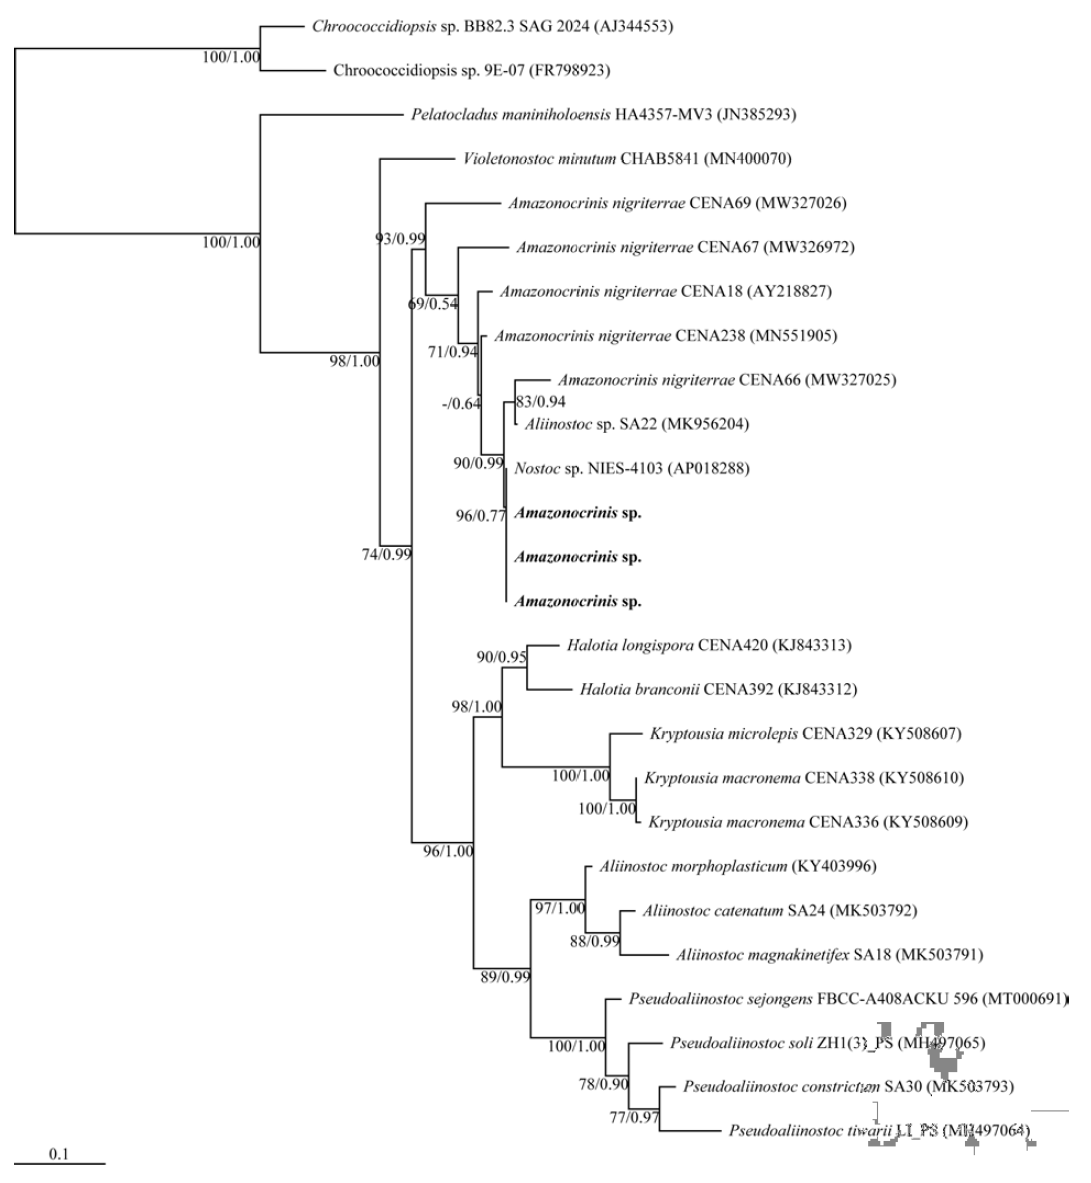 신종 후보 남세균 Amazonocrinis sp.의 16S rRNA 유전자 염기서열에 대한 분자 계통수